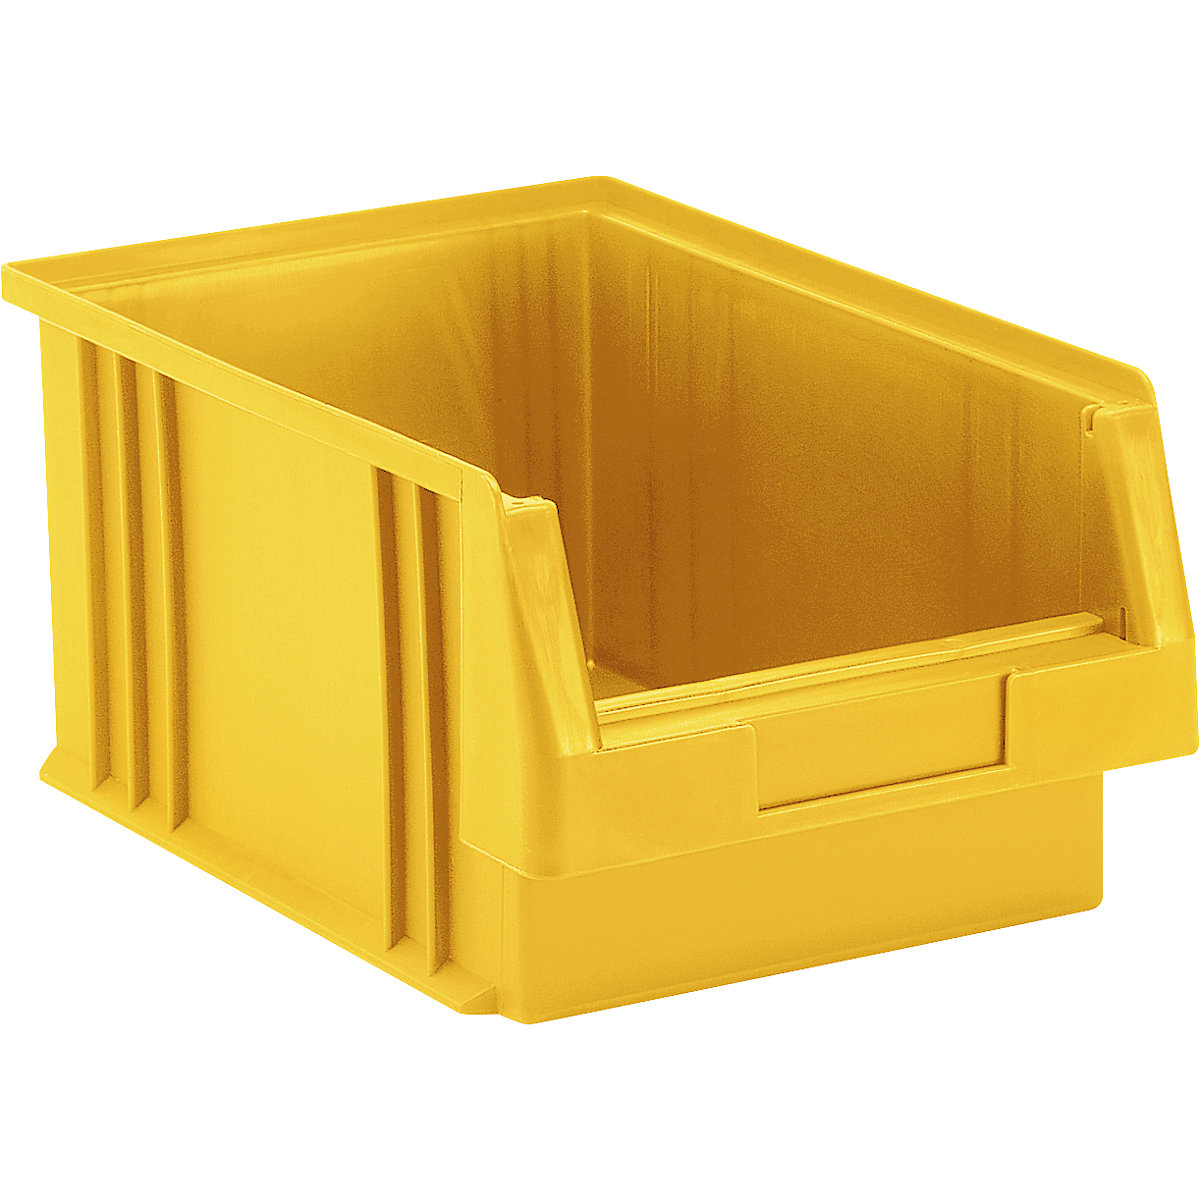 Otwarty pojemnik magazynowy z polipropylenu, poj. 7,4 l, opak. 10 szt., żółta-5